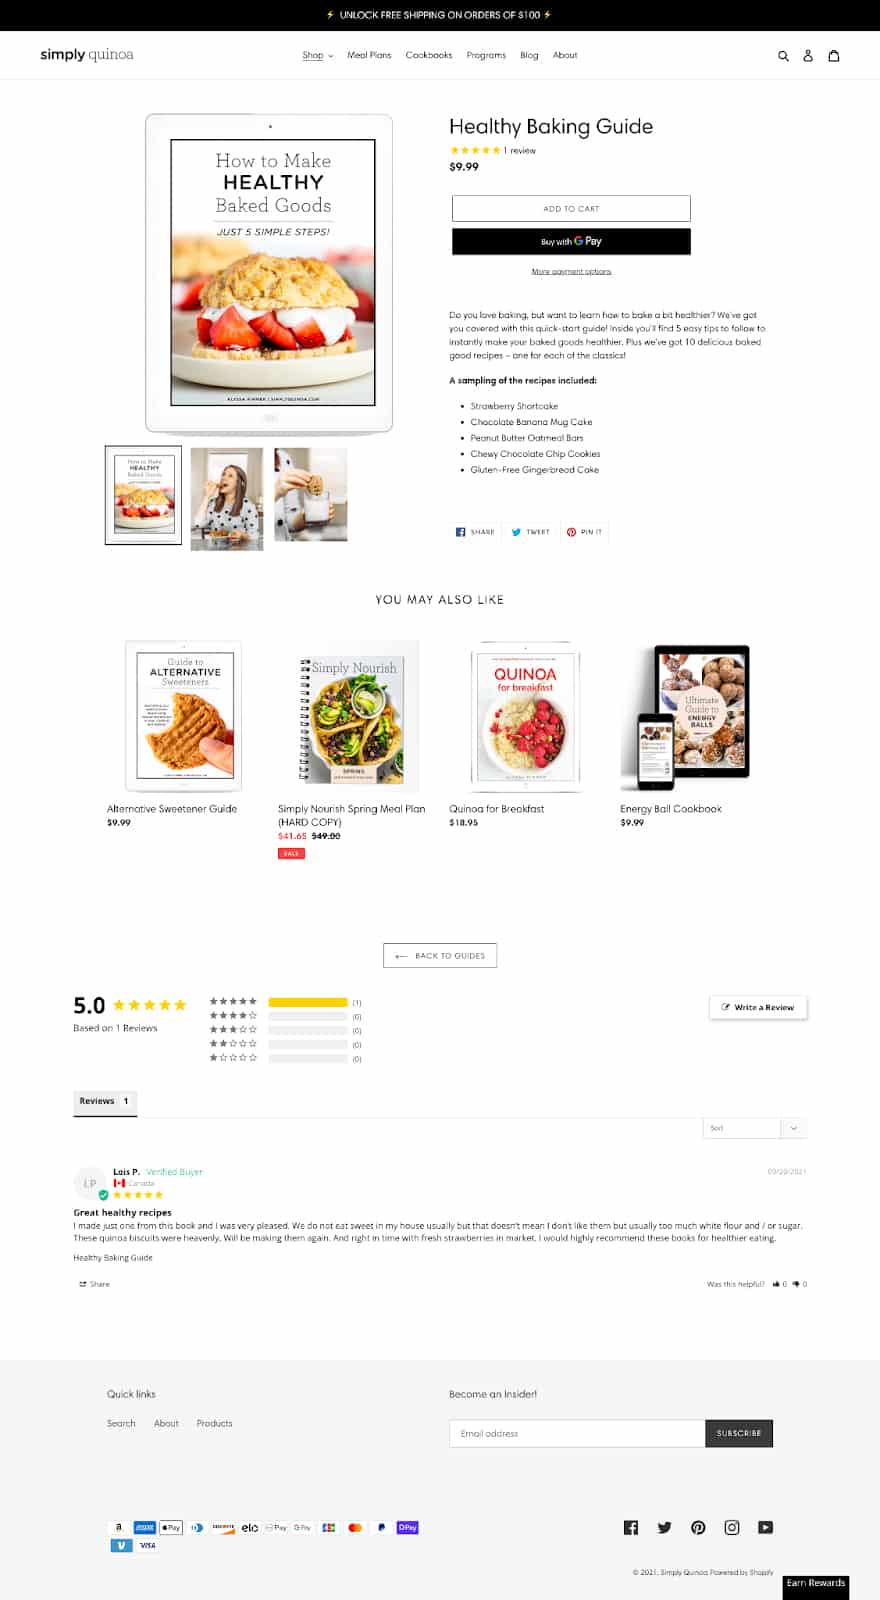 简单的藜麦产品页面与图书指南出售。